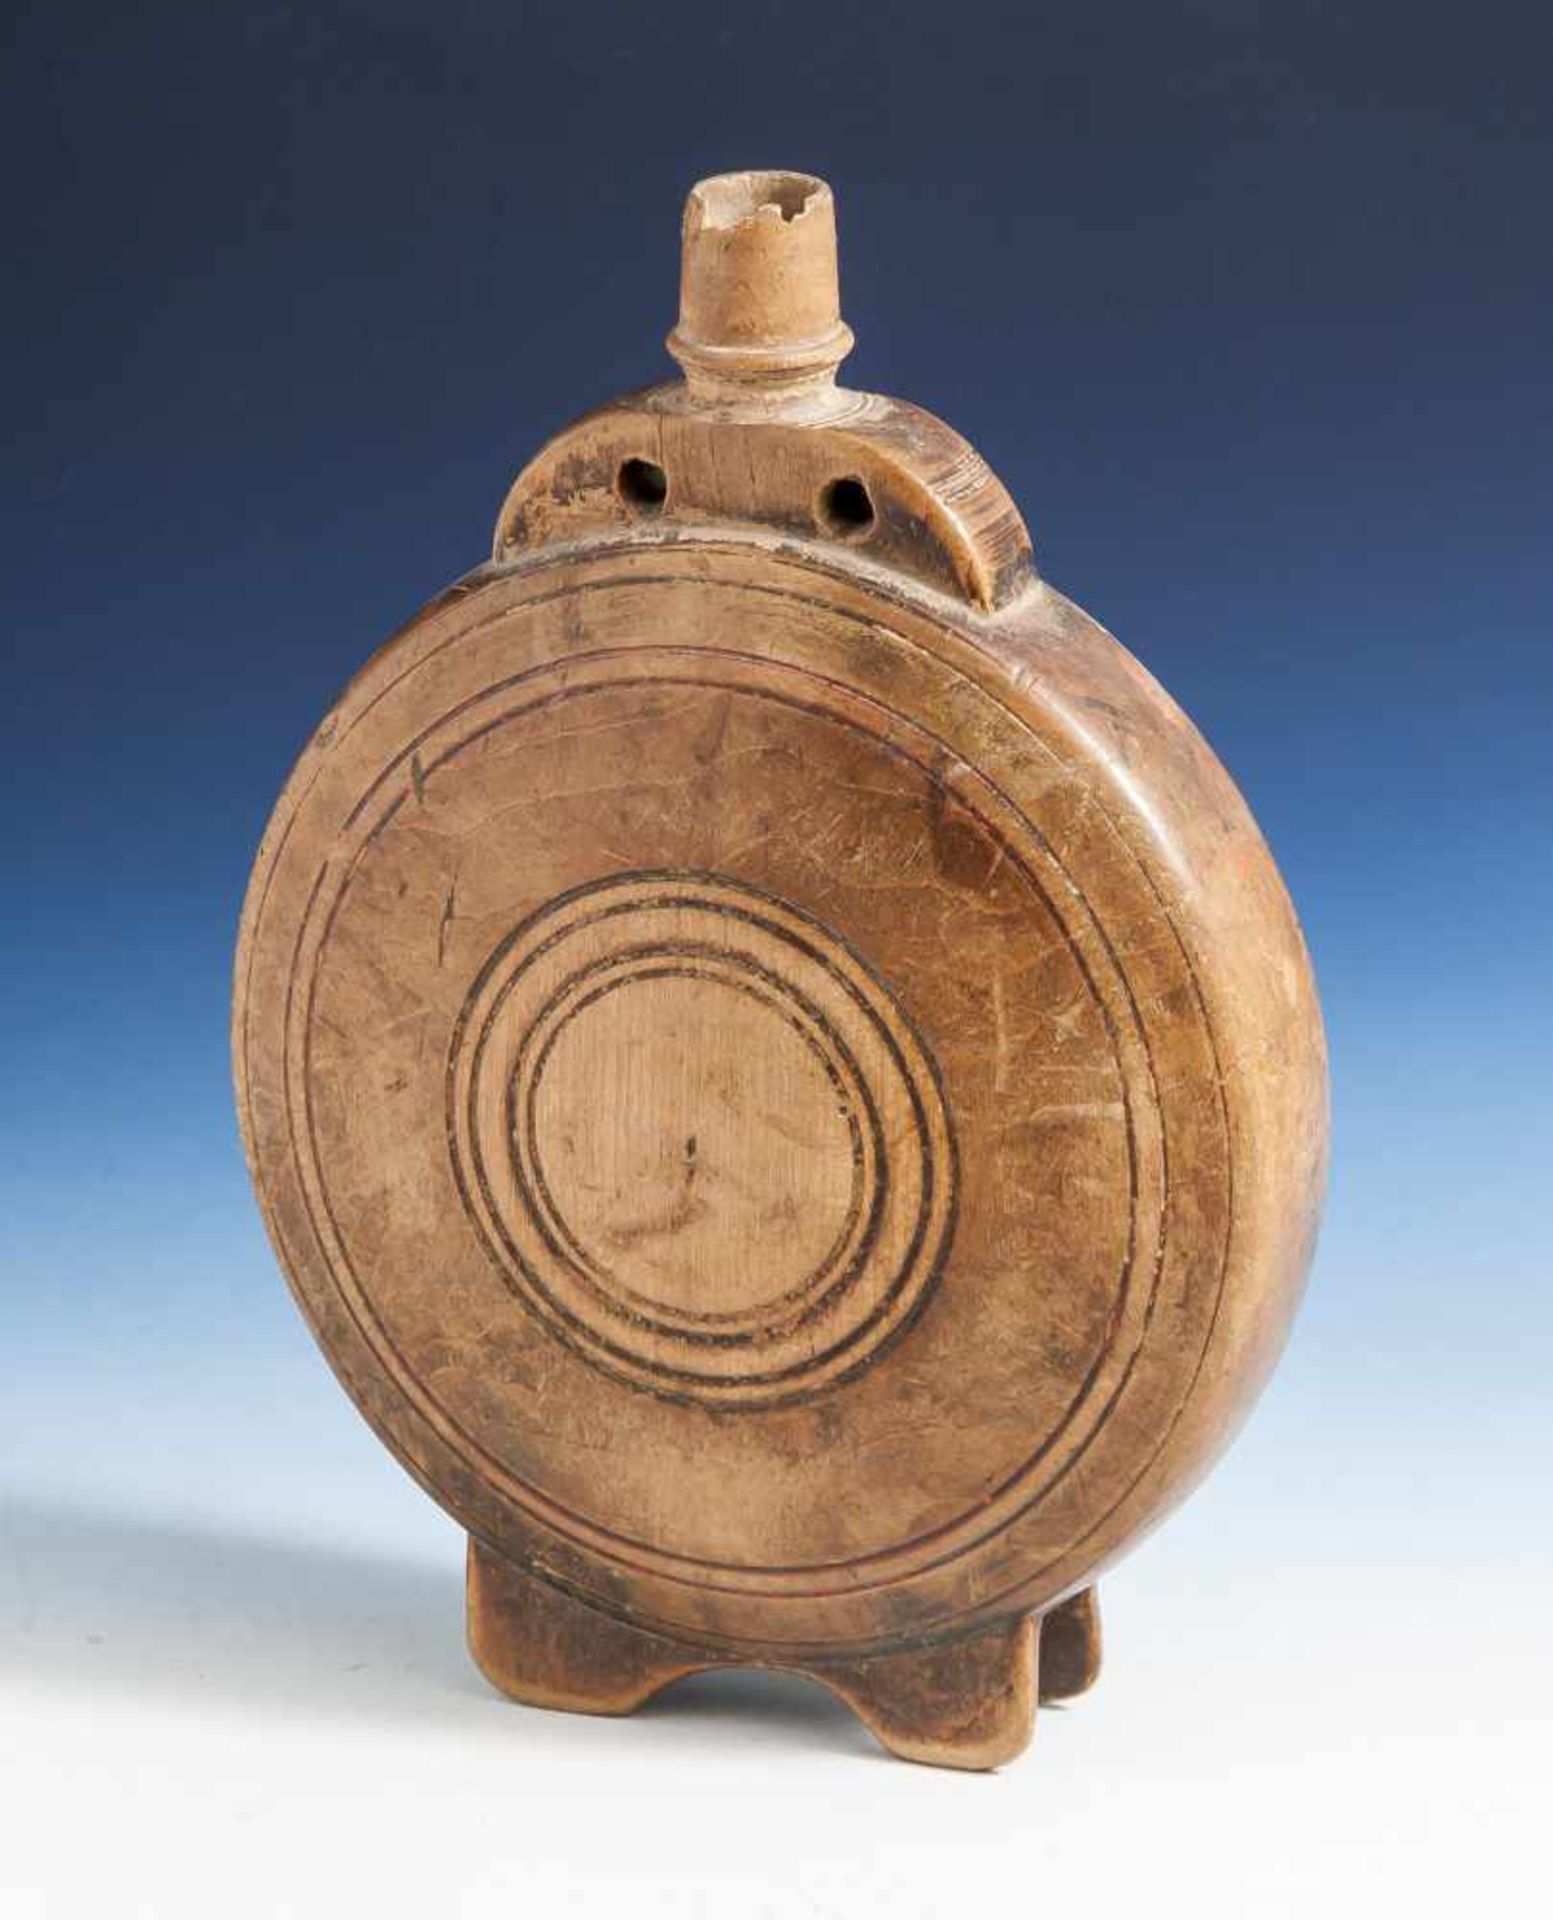 Feldflasche, wohl Rumänien, 19. Jahrhundert, Holz, runder, beidseitig abgeflachterGefäßkörper auf